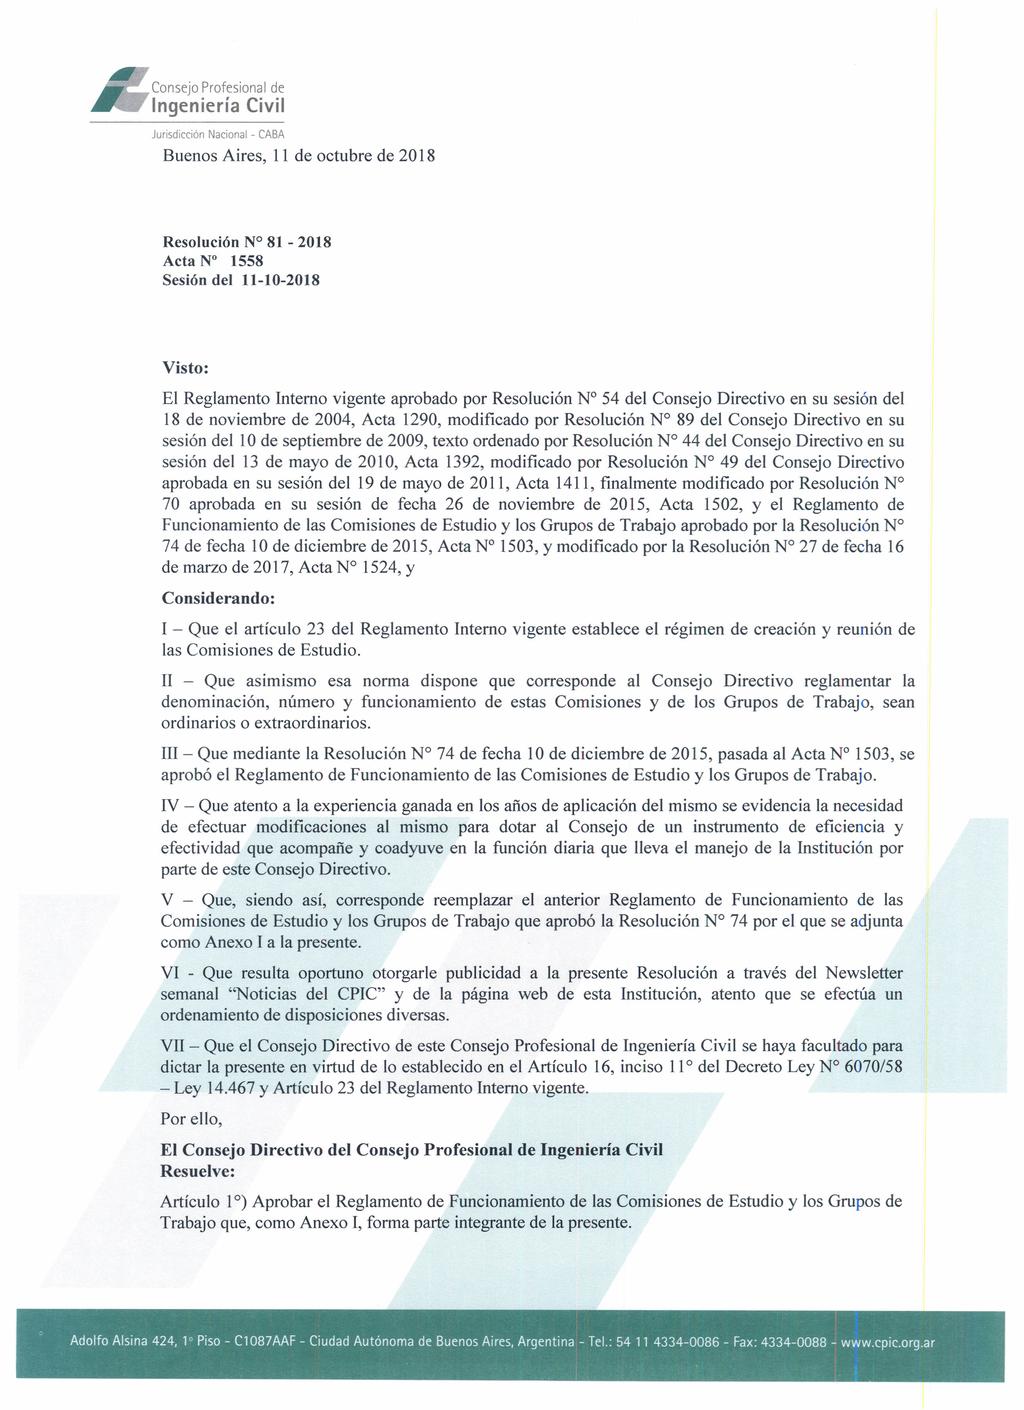 Buenos Aires, 11 octubre 2018 Resolución N 81-2018 Acta N 1558 Sesión l 11-10-2018 Visto: El Reglamento Interno vigente aprobado por Resolución N 54 l Consejo Directivo en su sesión l 18 noviembre